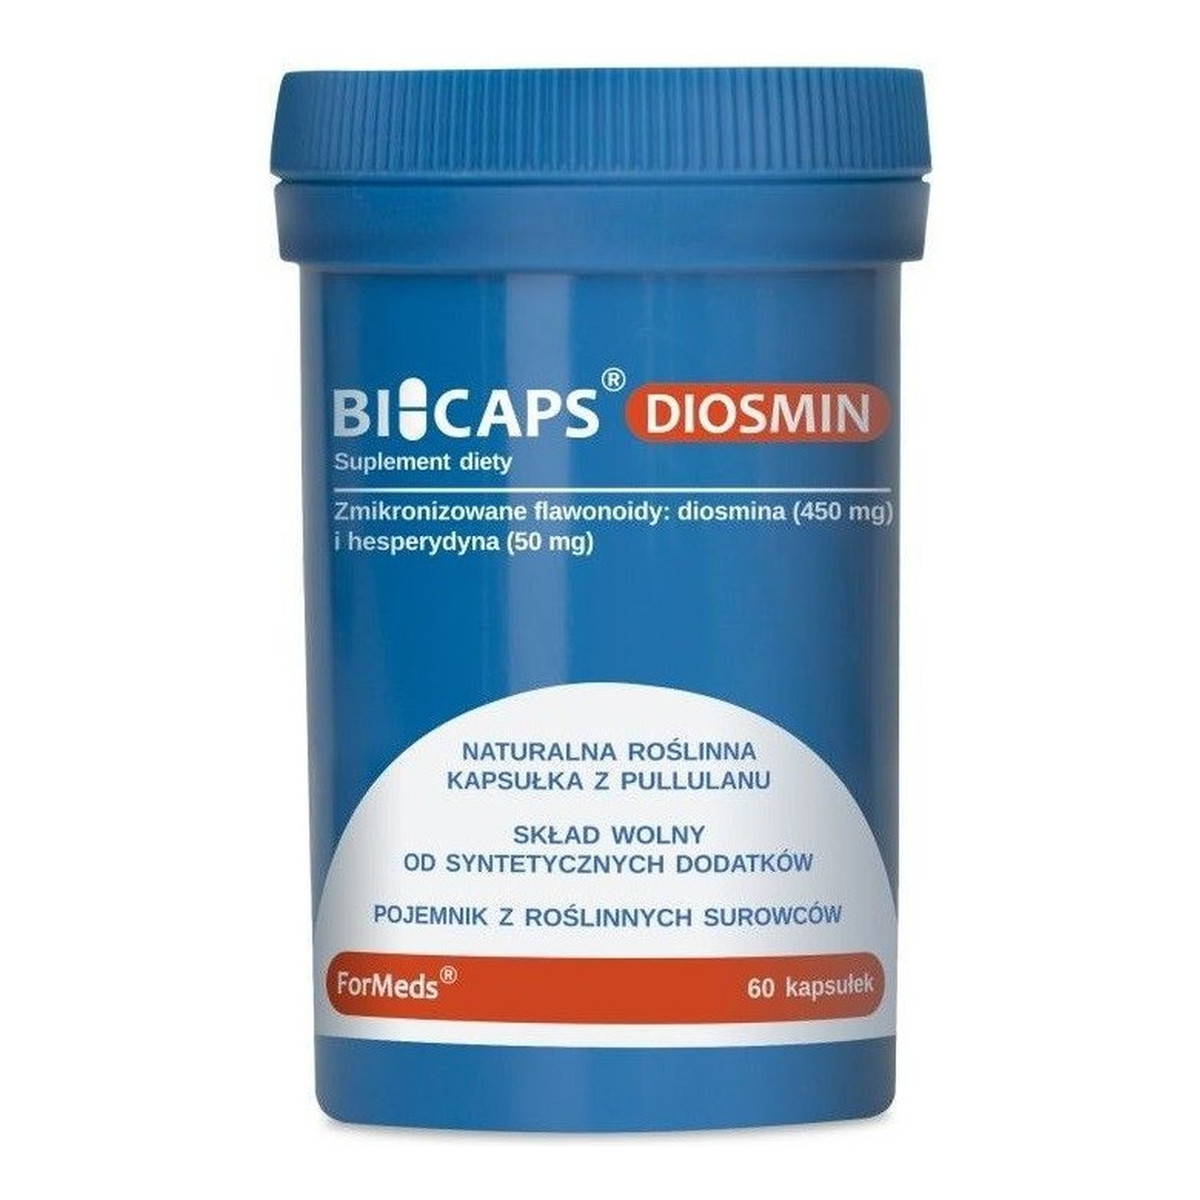 Formeds Bicaps F-Diosmin zmikronizowane flawonoidy suplement diety 60 Kapsułek